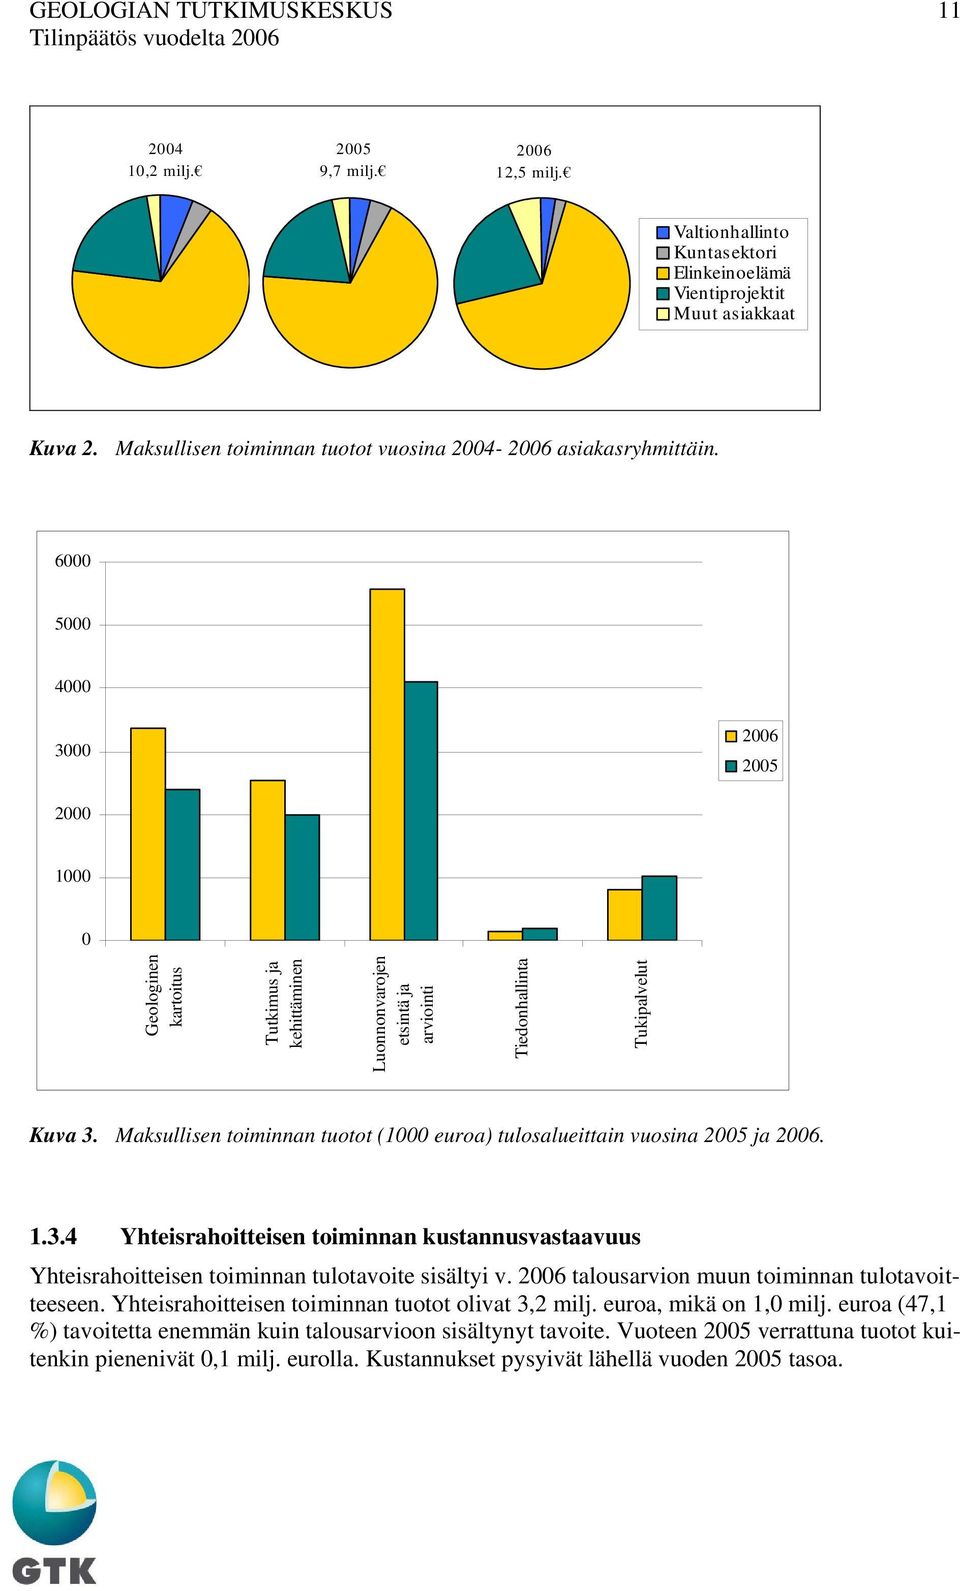 Maksullisen toiminnan tuotot (1000 euroa) tulosalueittain vuosina 2005 ja 2006. 1.3.4 Yhteisrahoitteisen toiminnan kustannusvastaavuus Yhteisrahoitteisen toiminnan tulotavoite sisältyi v.